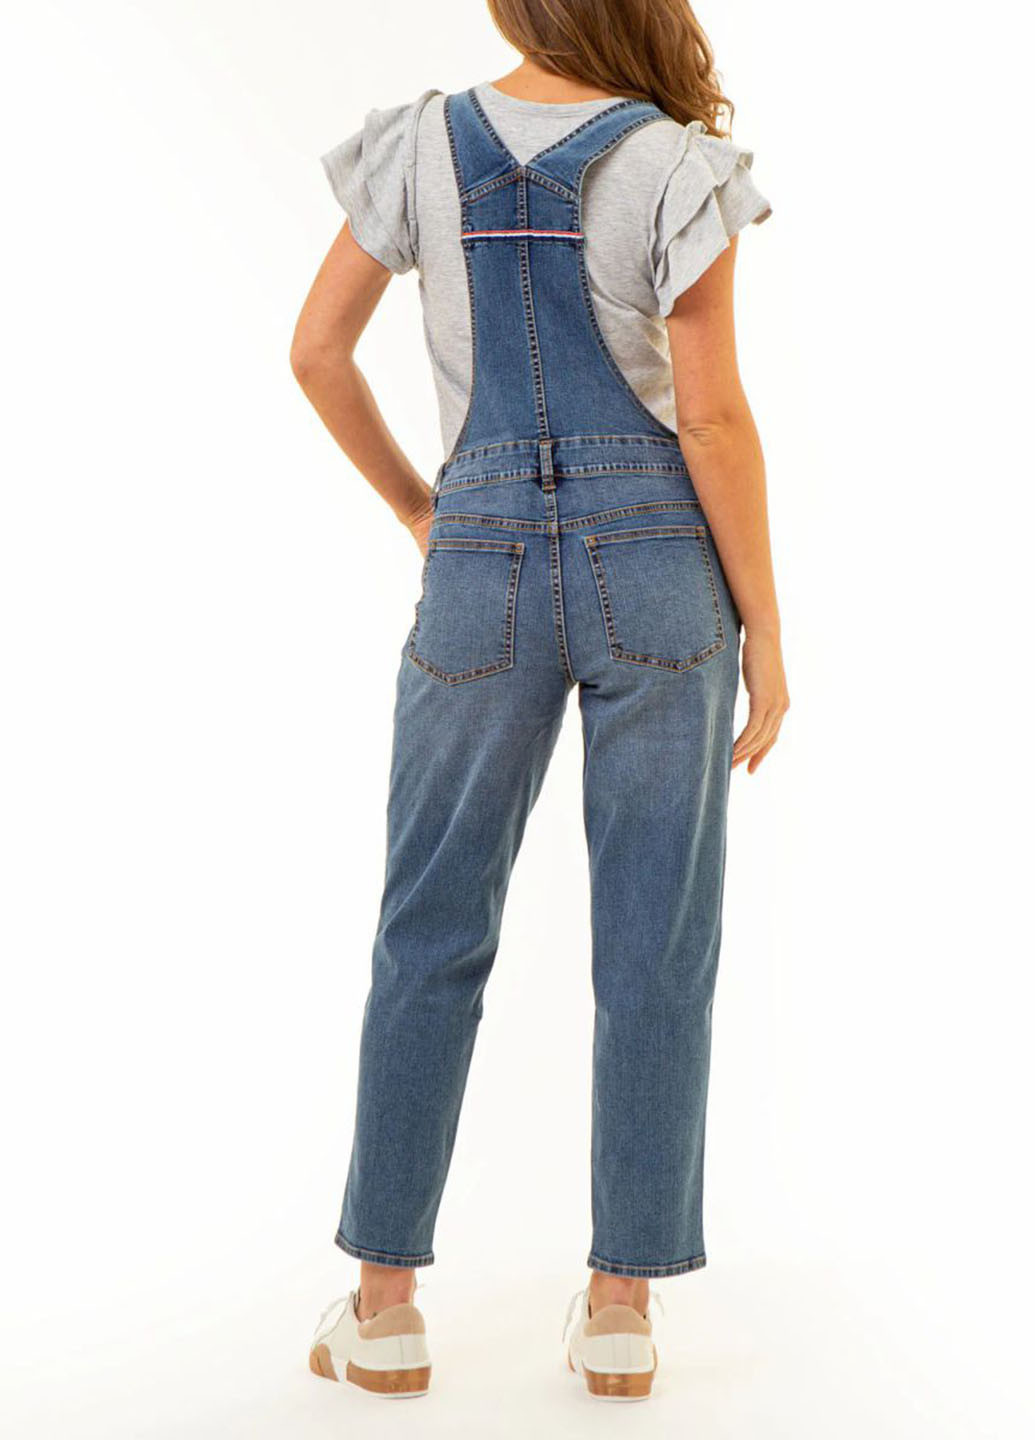 Комбінезон U.S. Polo Assn. комбінезон-брюки однотонний синій джинсовий бавовна